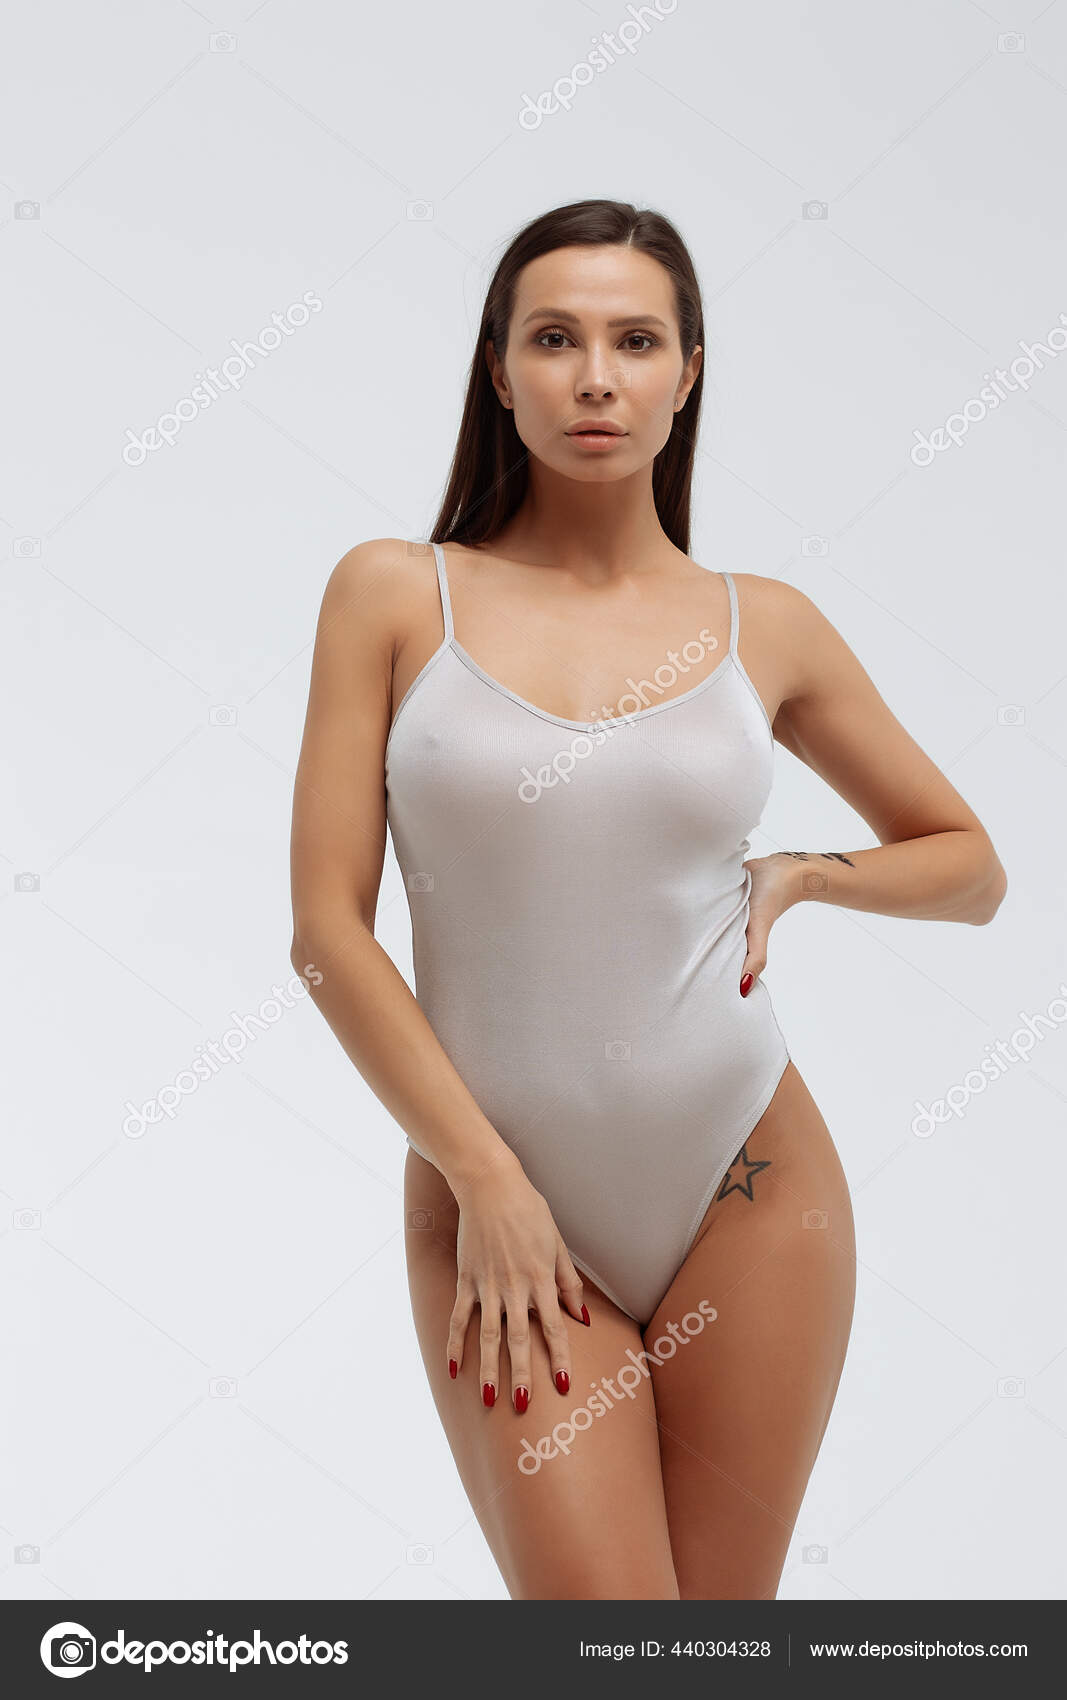 https://st2.depositphotos.com/5034975/44030/i/1600/depositphotos_440304328-stock-photo-tender-female-wearing-bodysuit-standing.jpg